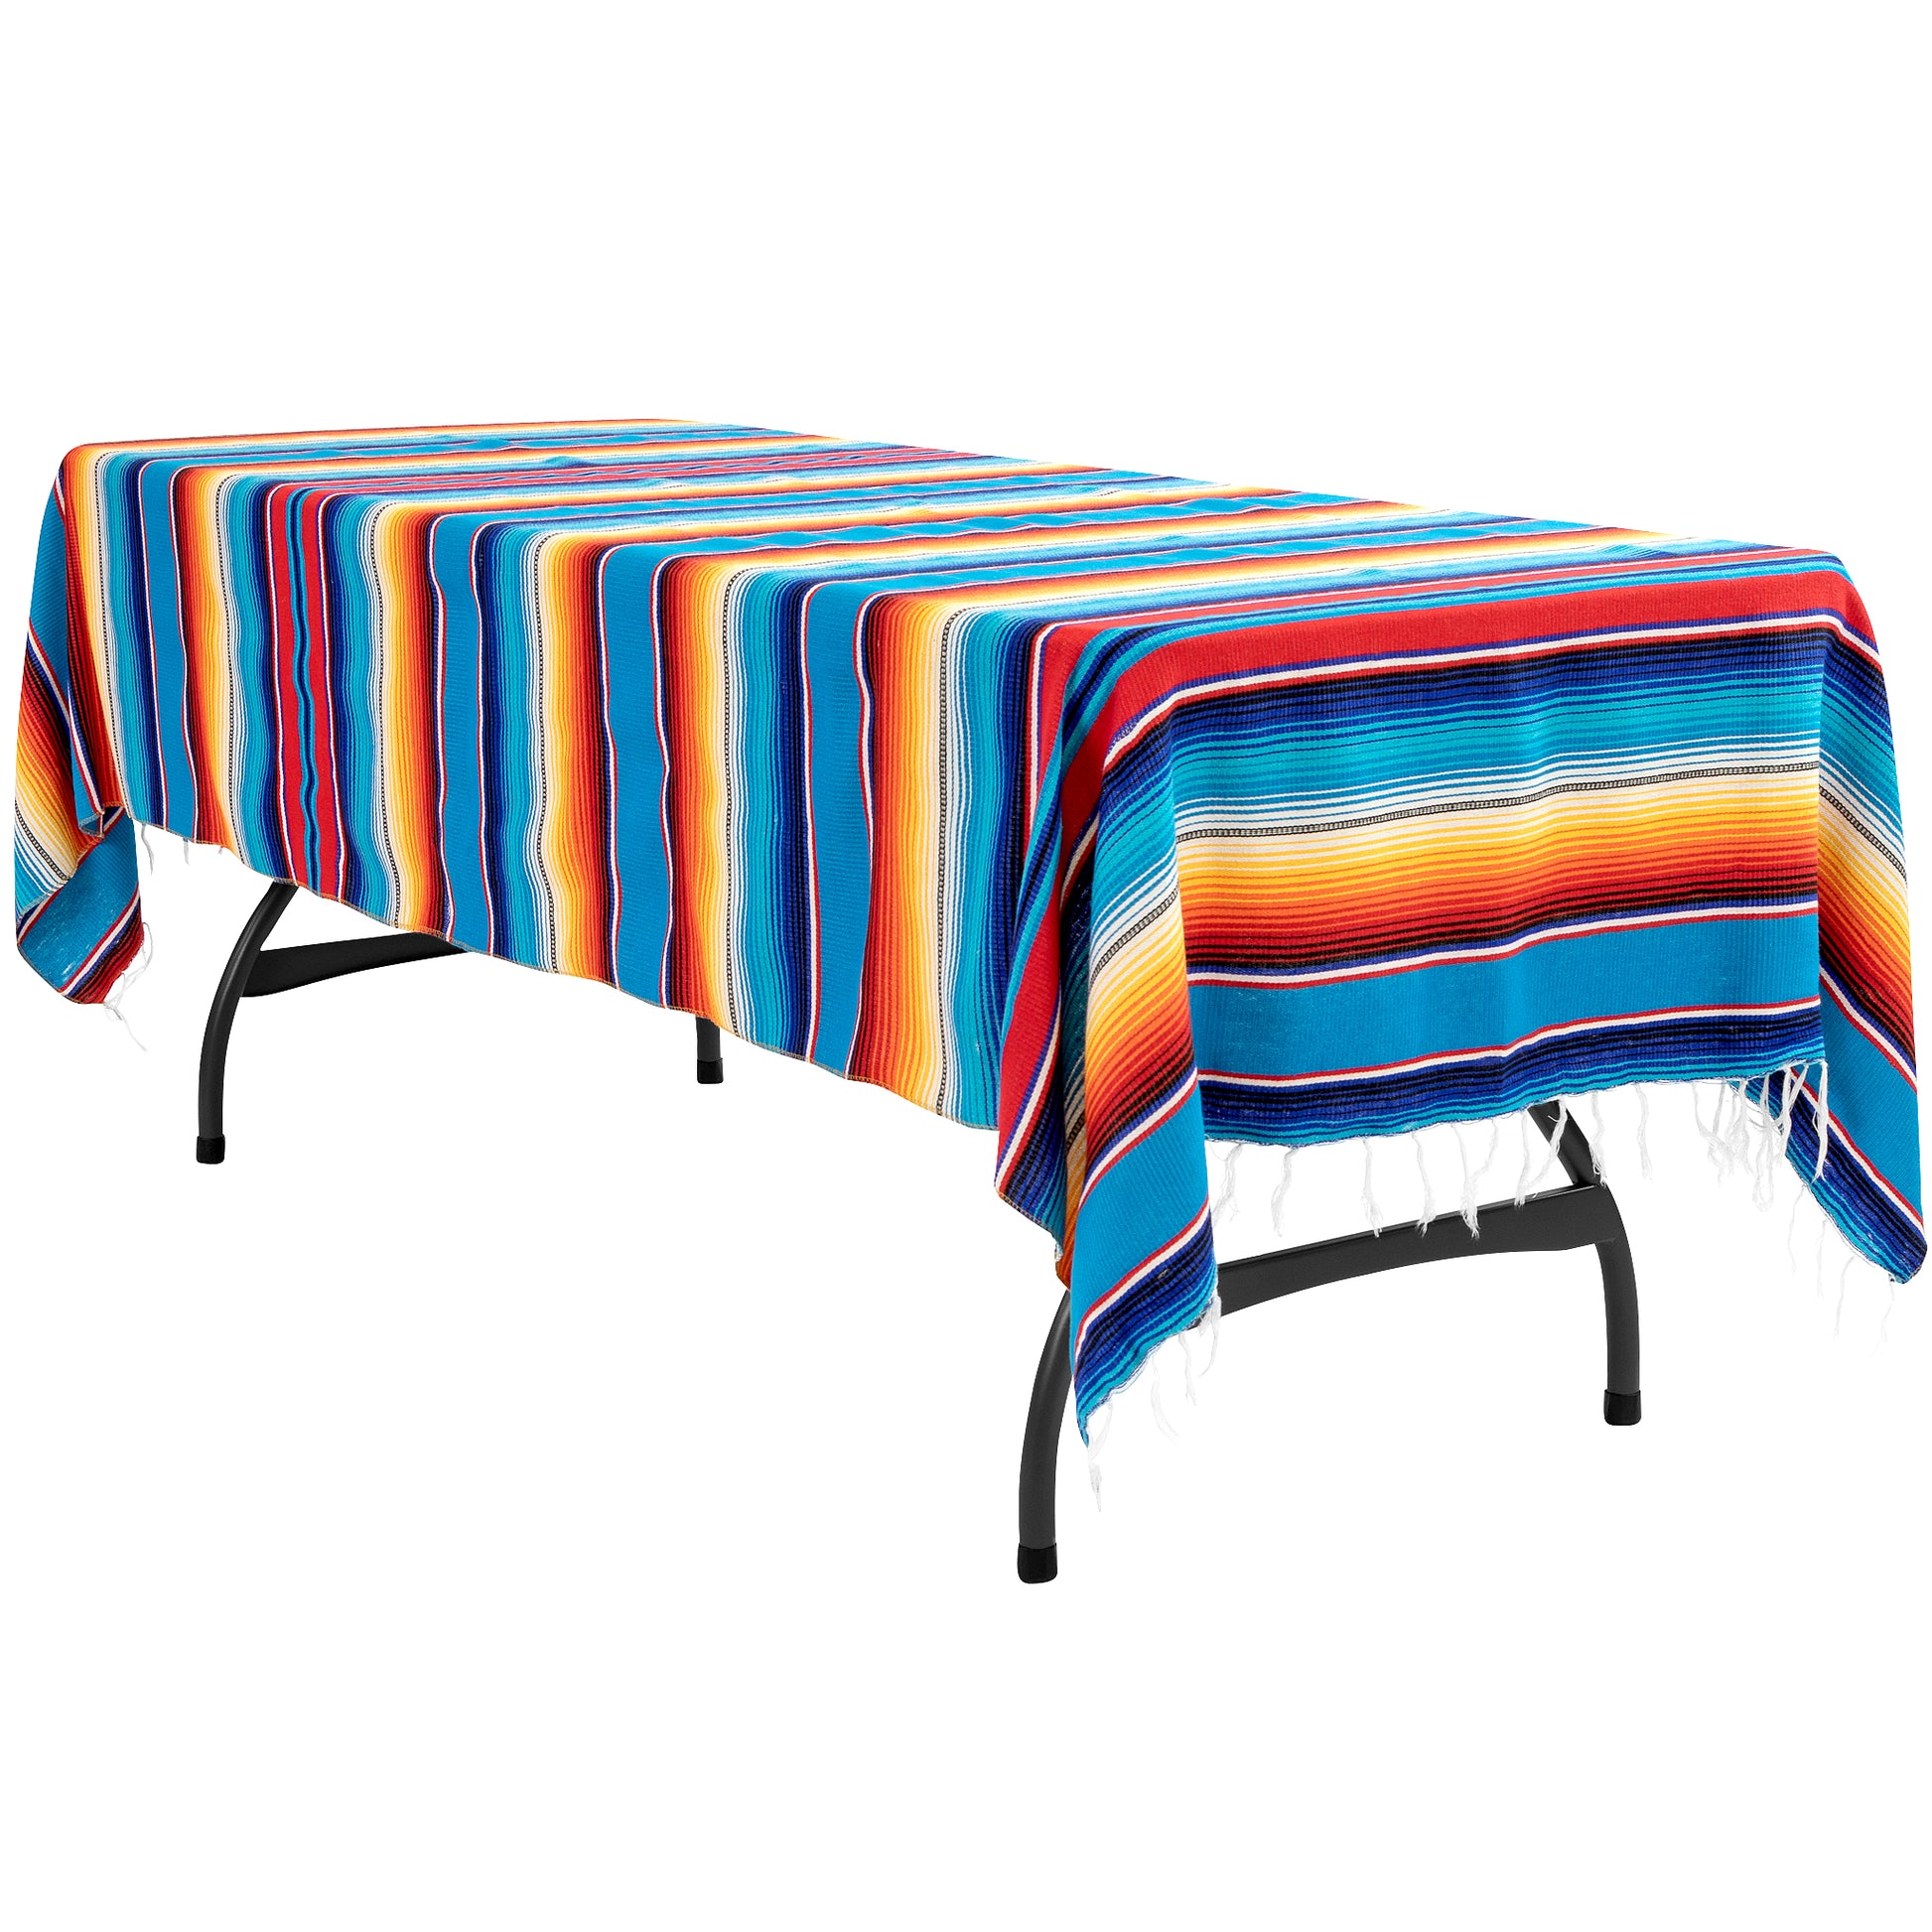 Woven Mexican Serape Tablecloth 57"x102" Rectangular - CV Linens